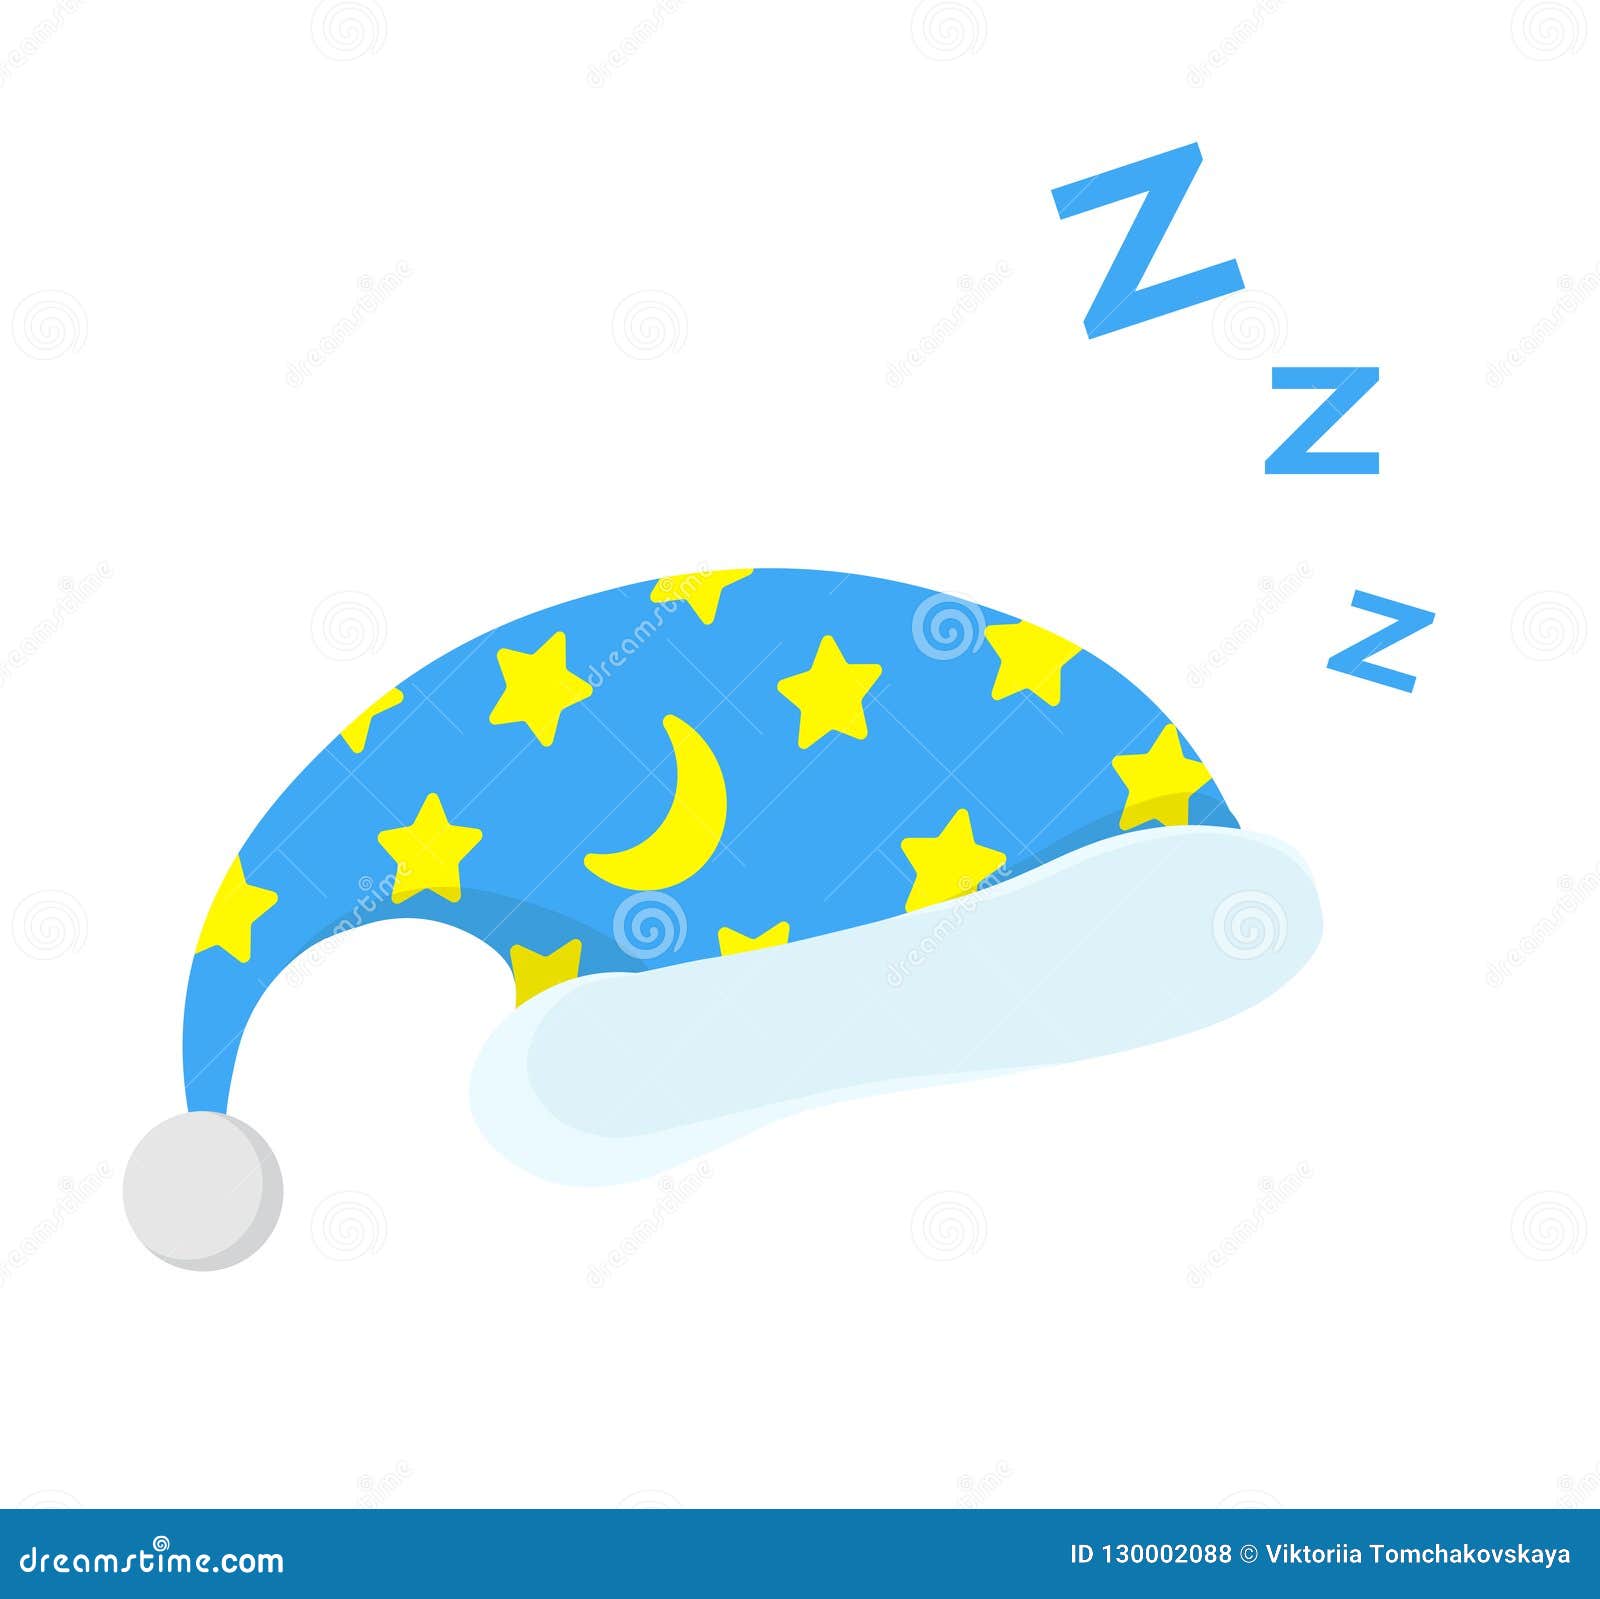 Illustration of Isolated Cartoon Sleeping Cap. Cute Sleeping Icon. Good